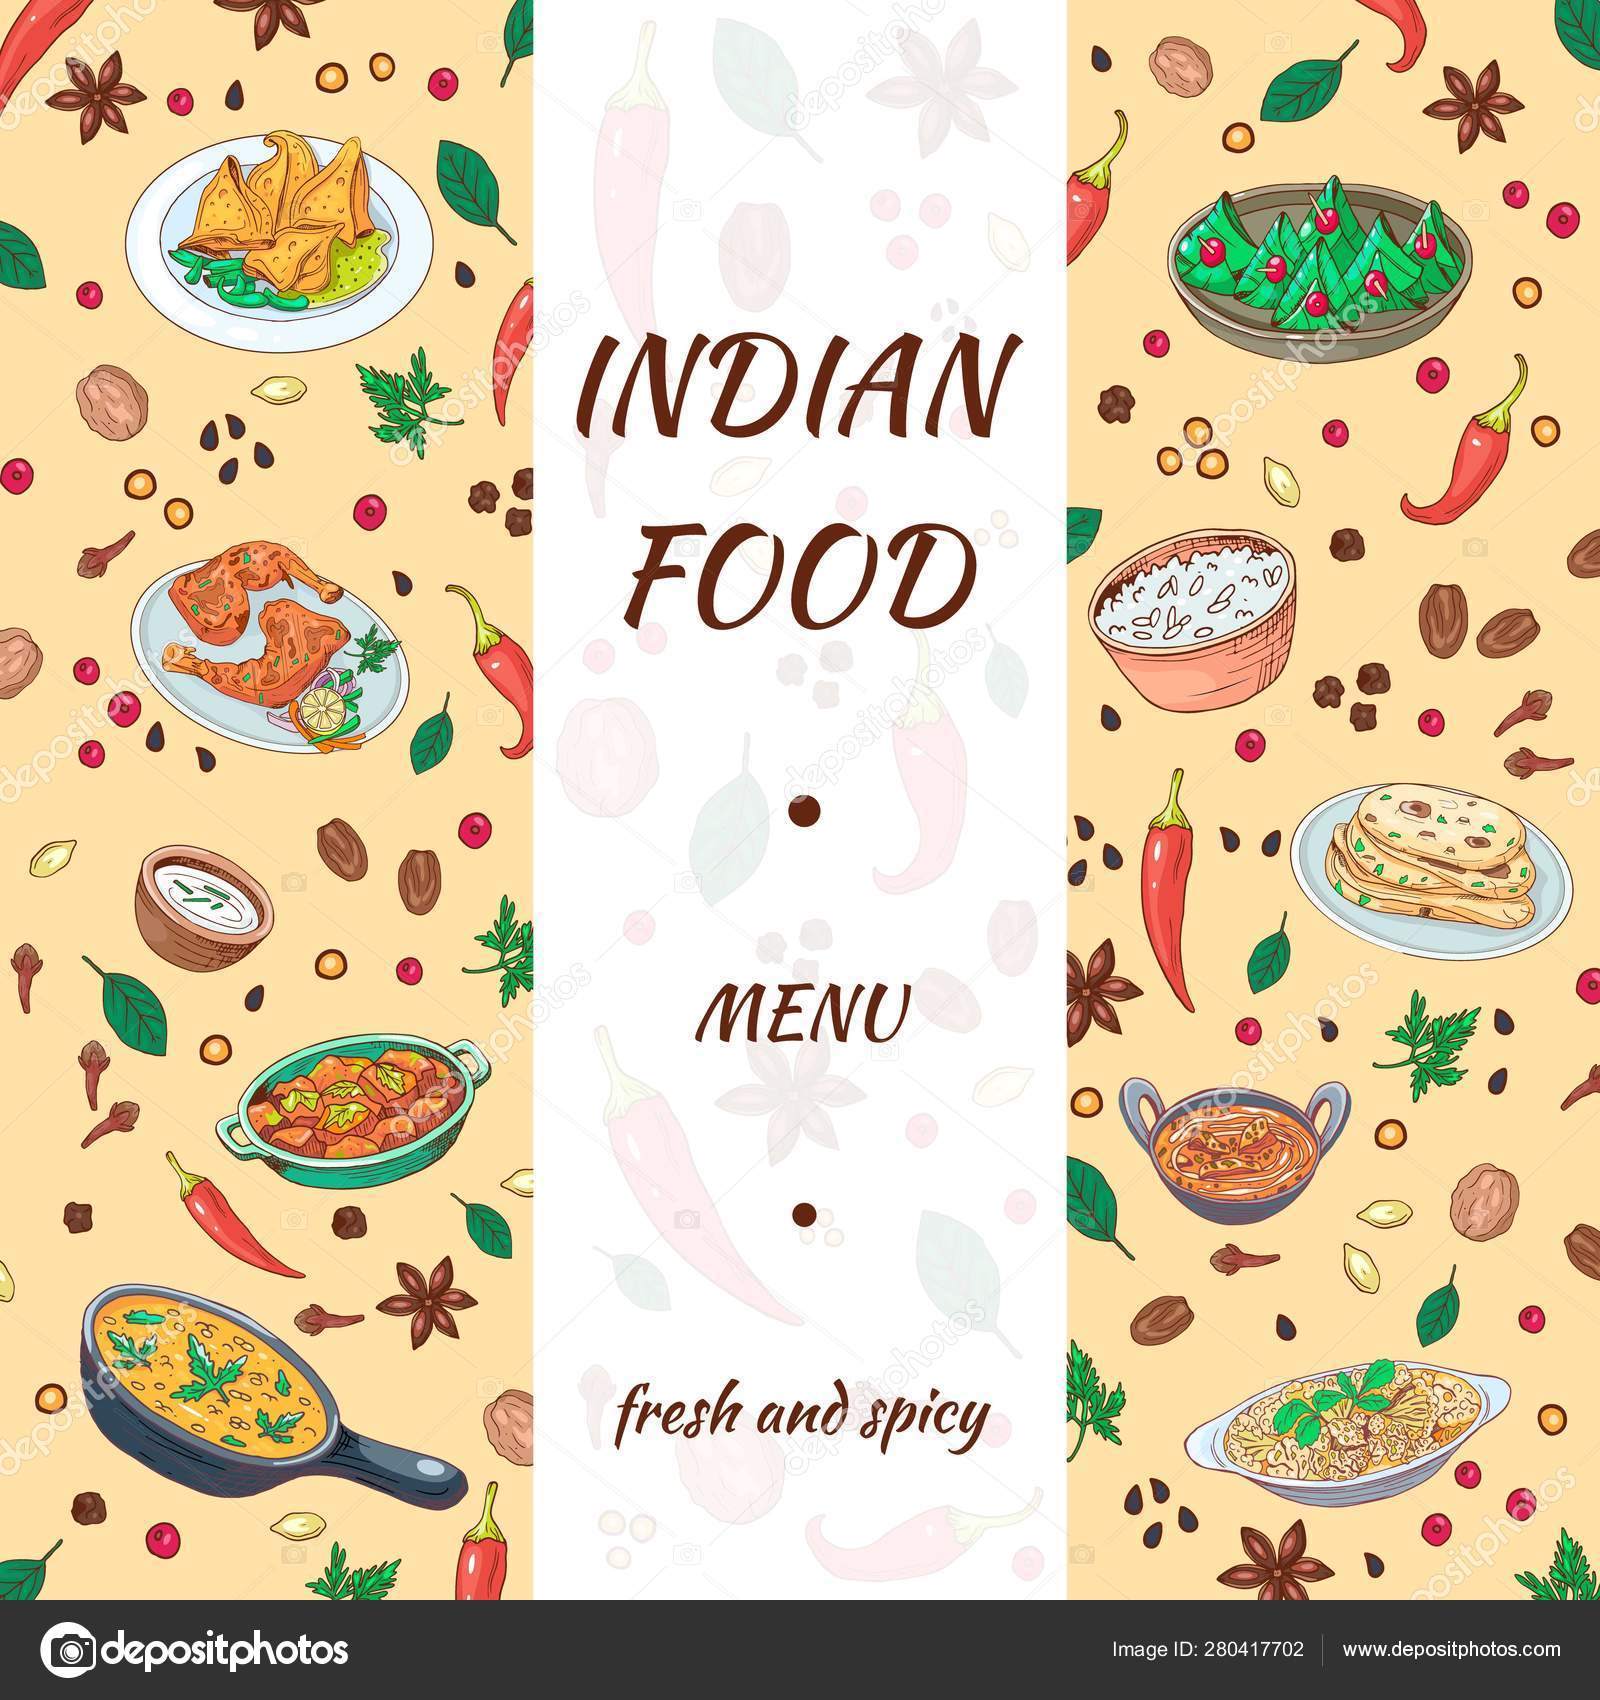 Hãy khám phá sự tinh tế và tài hoa của người thiết kế khi tạo ra một thực đơn ẩm thực Ấn Độ hoàn toàn bằng tay. Với những nét vẽ tinh xảo và sắc nét, thực đơn này chắc chắn sẽ khiến bạn thèm thuồng và muốn thưởng thức những món ăn tuyệt vời của Ấn Độ ngay lập tức.